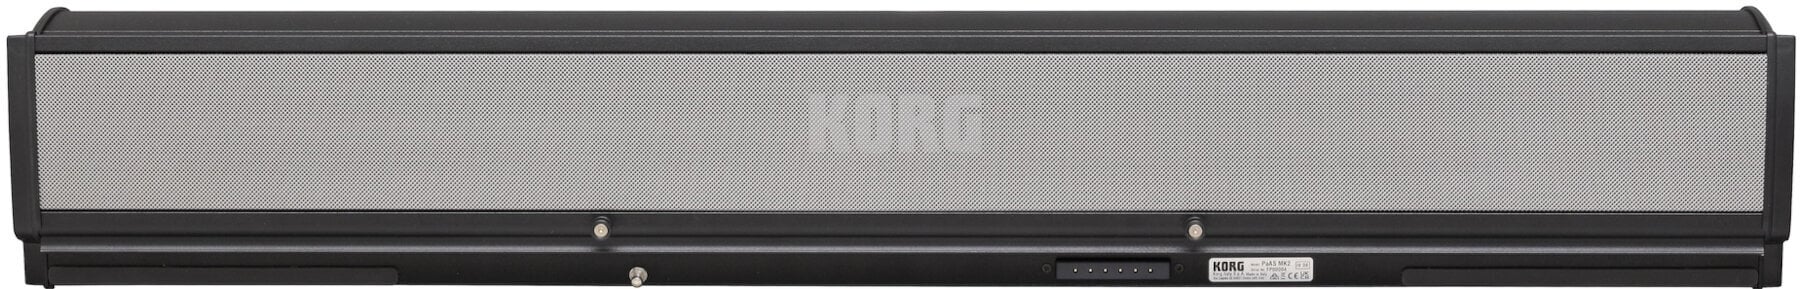 Sistem de sunet pentru claviaturi Korg PaAS MK2